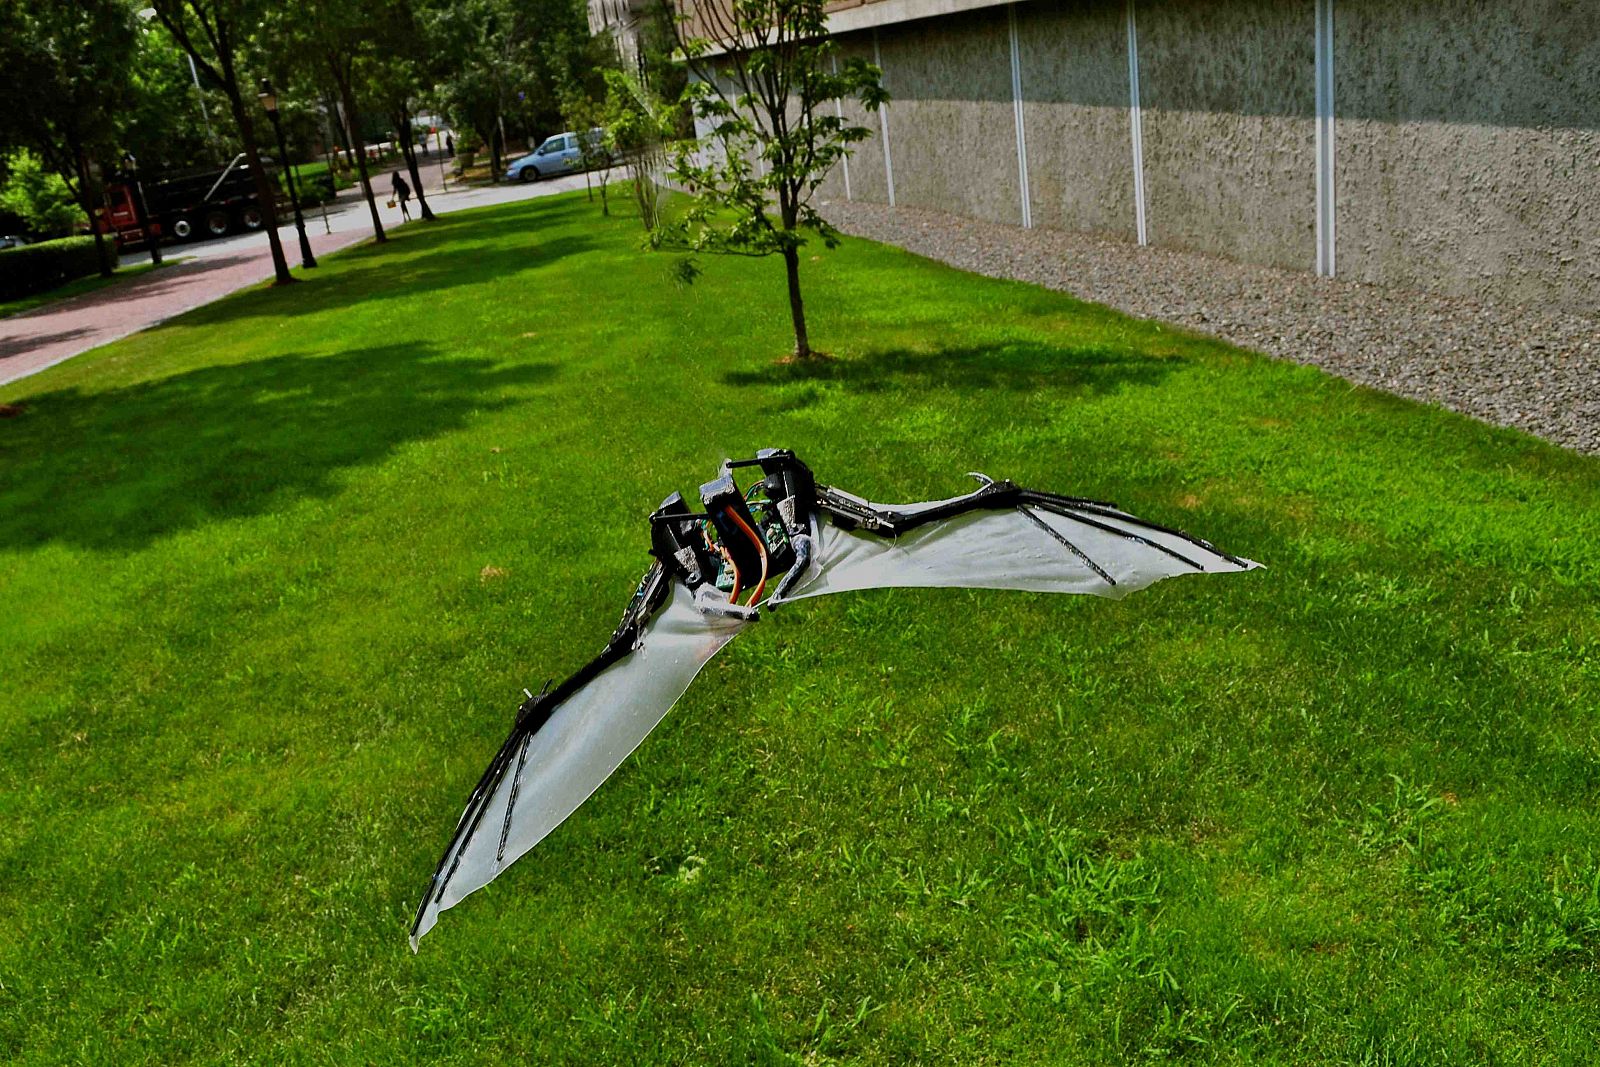 El micro robot aéreo BaTboT está inspirado en la fisionomía y biomecánica del murcielago